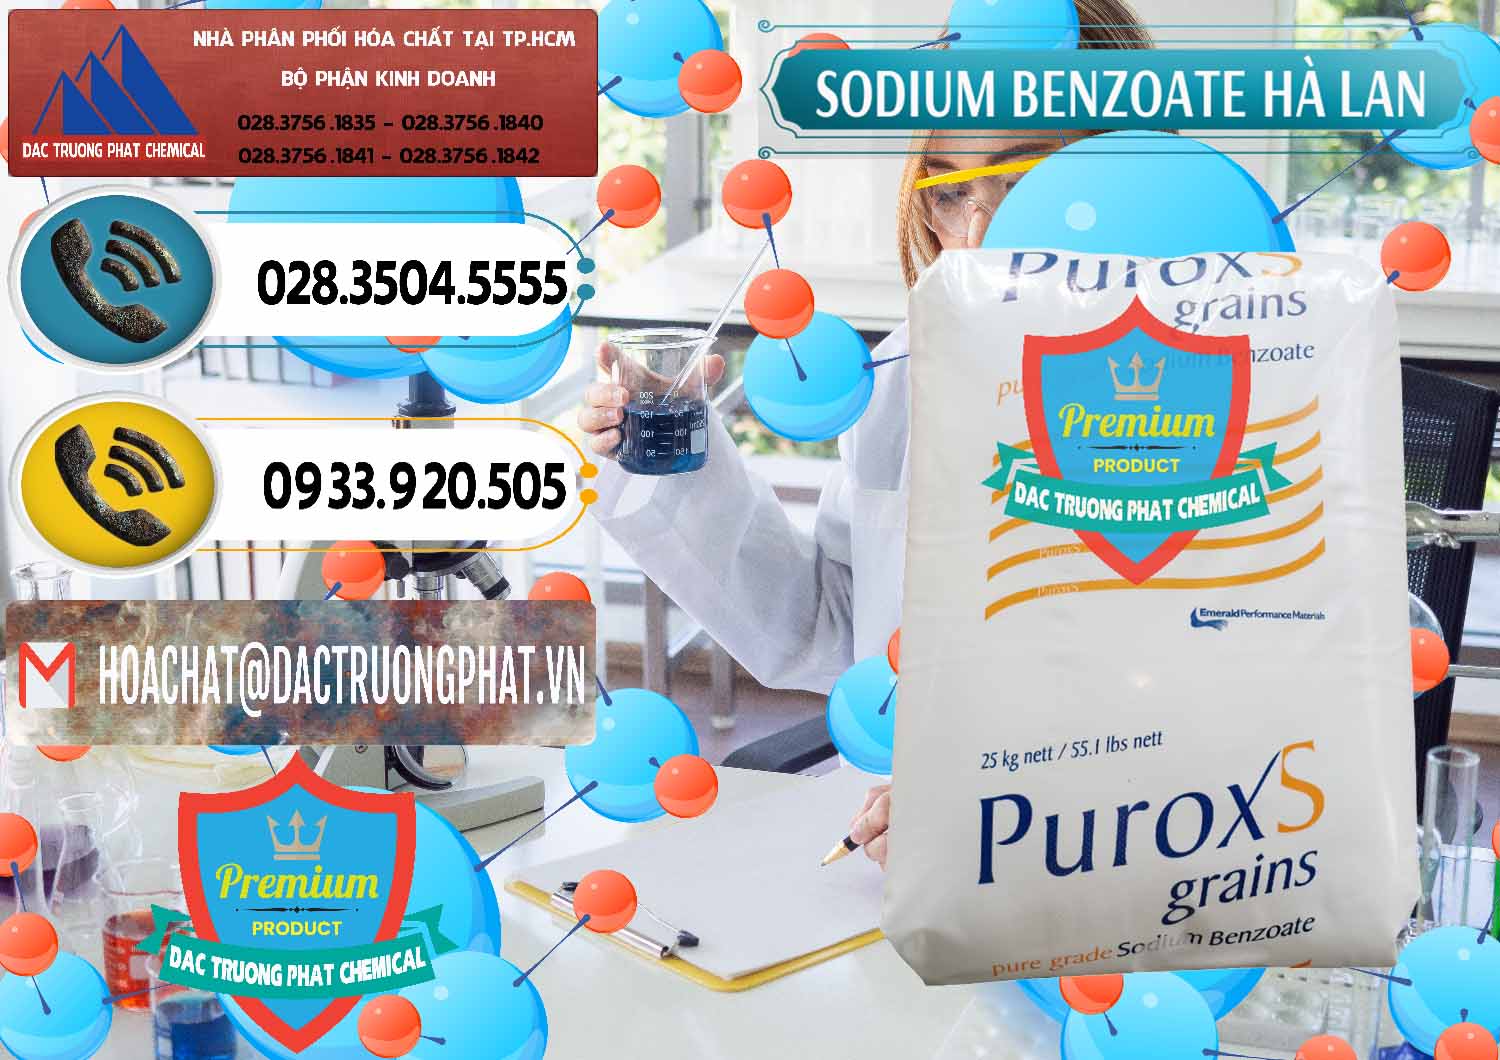 Chuyên cung cấp và bán Sodium Benzoate - Mốc Bột Puroxs Hà Lan Netherlands - 0467 - Đơn vị phân phối - cung cấp hóa chất tại TP.HCM - hoachatdetnhuom.vn